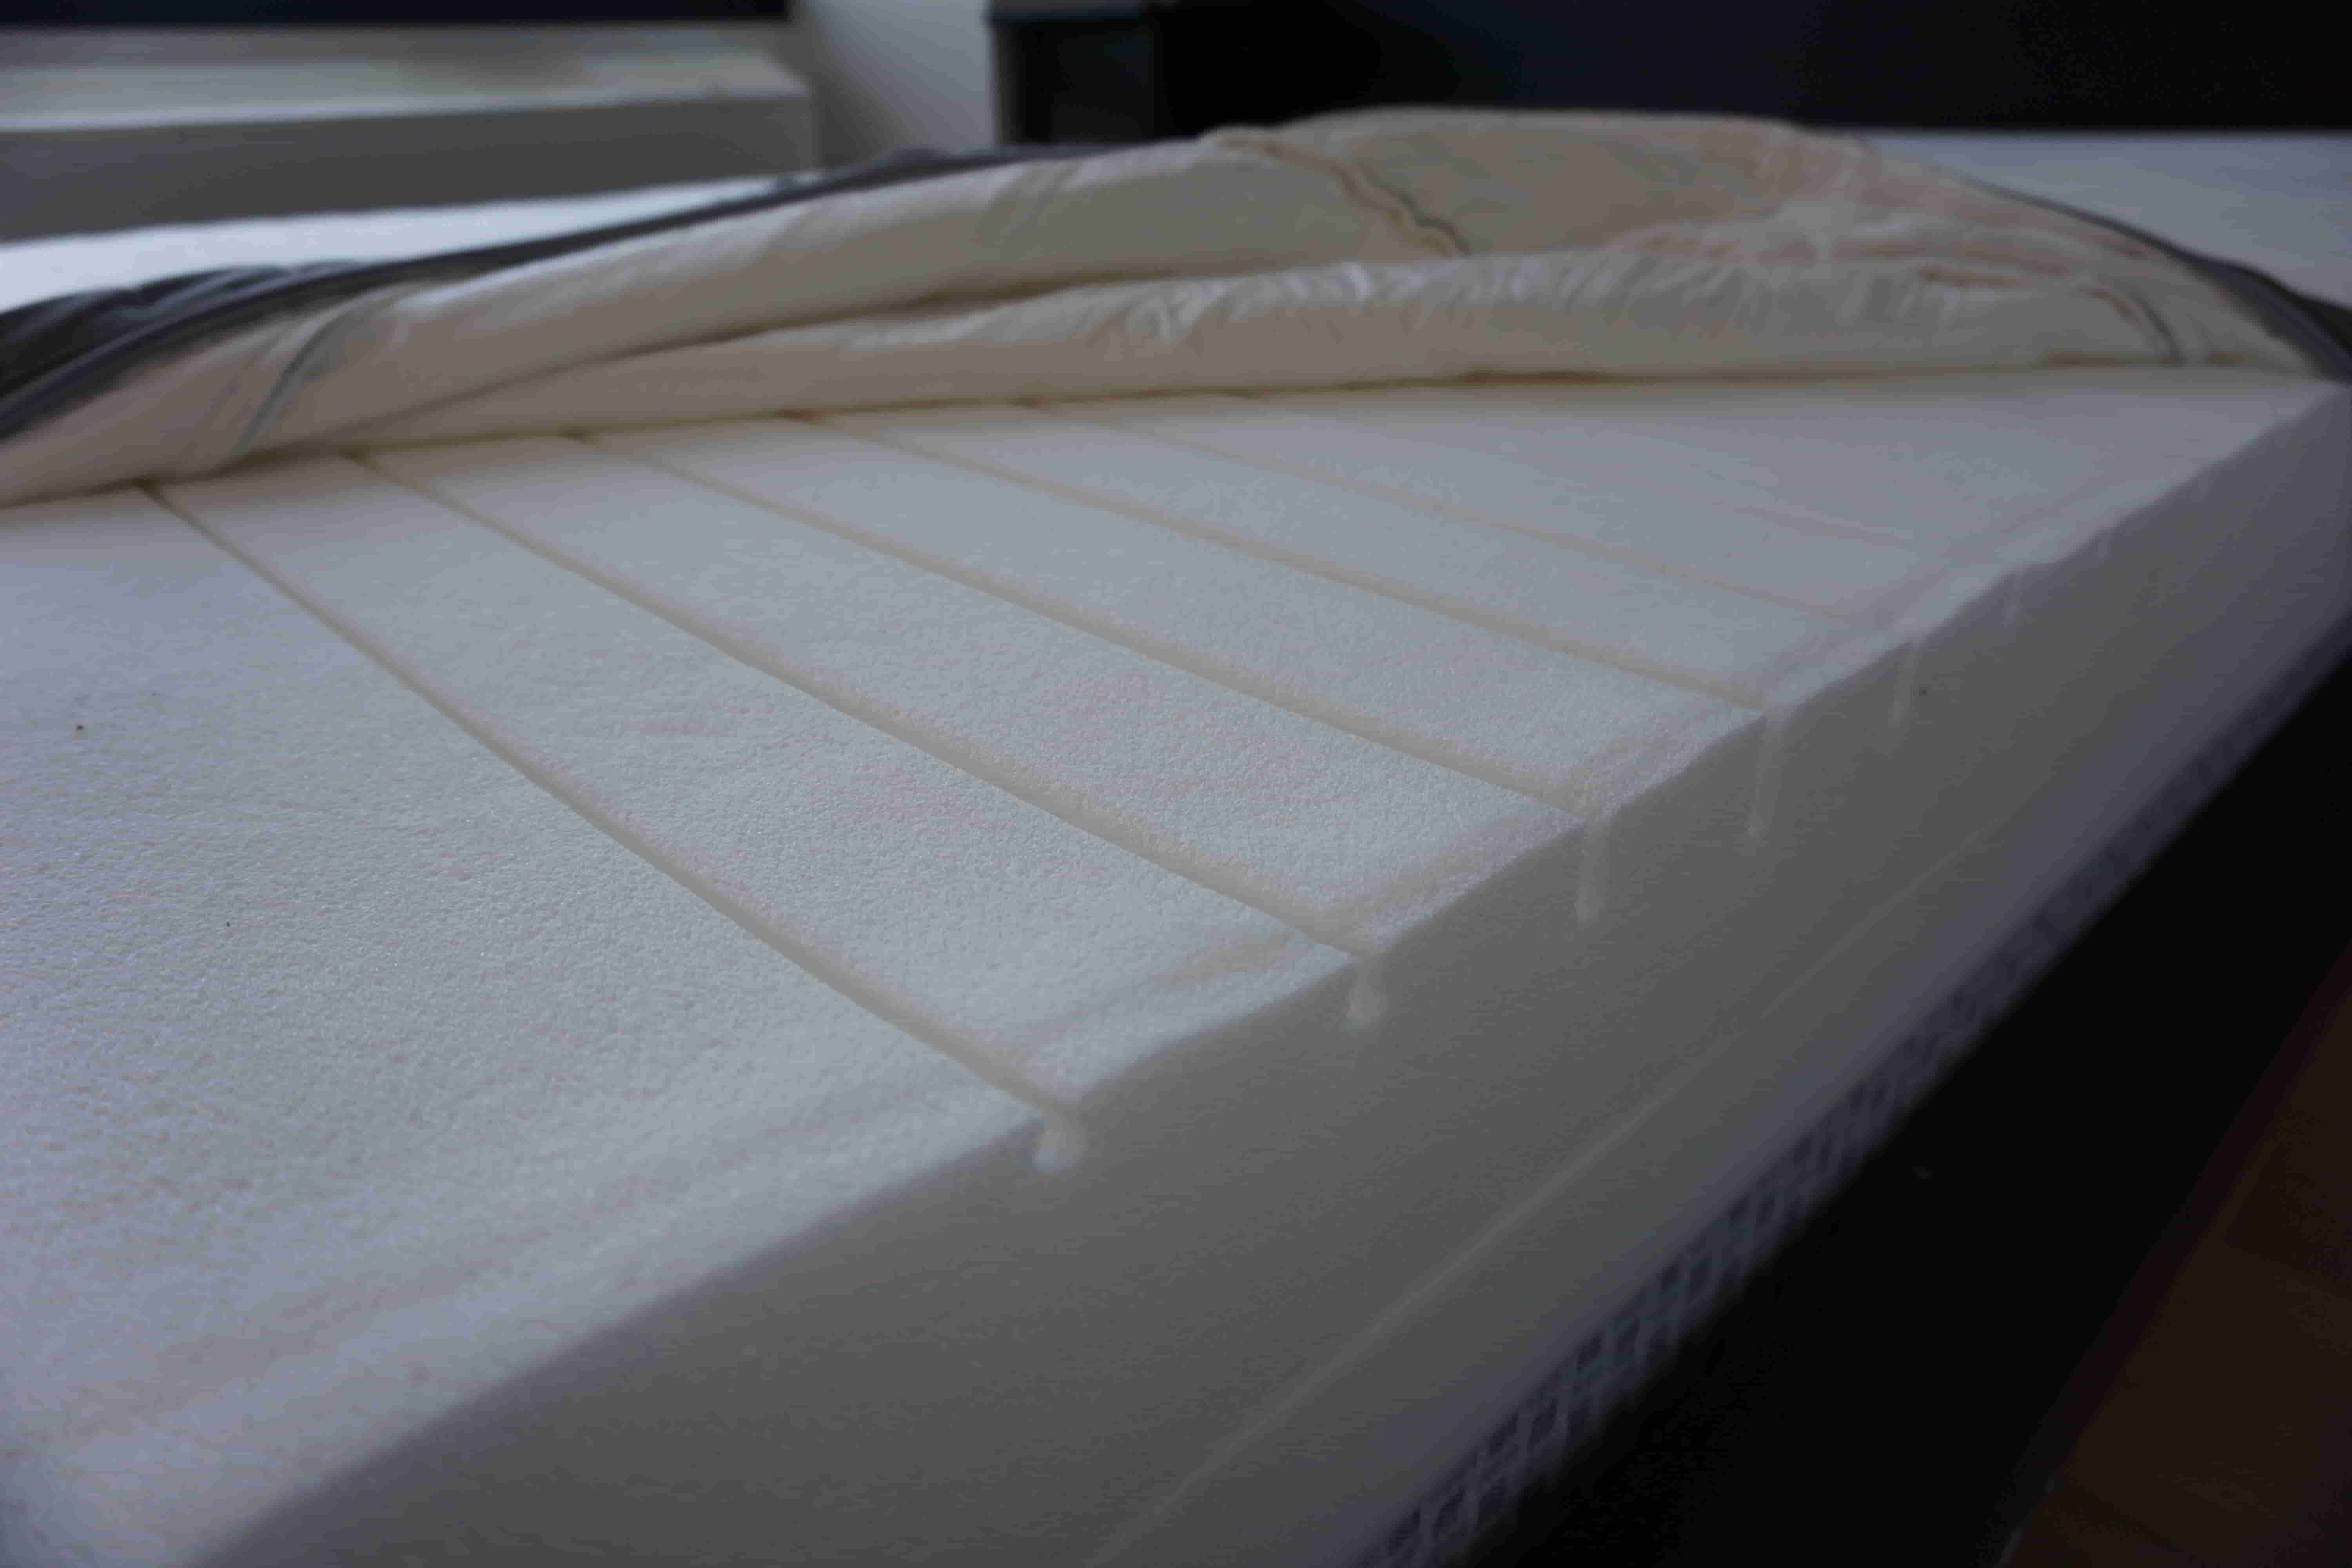 morgedal foam mattress reddit